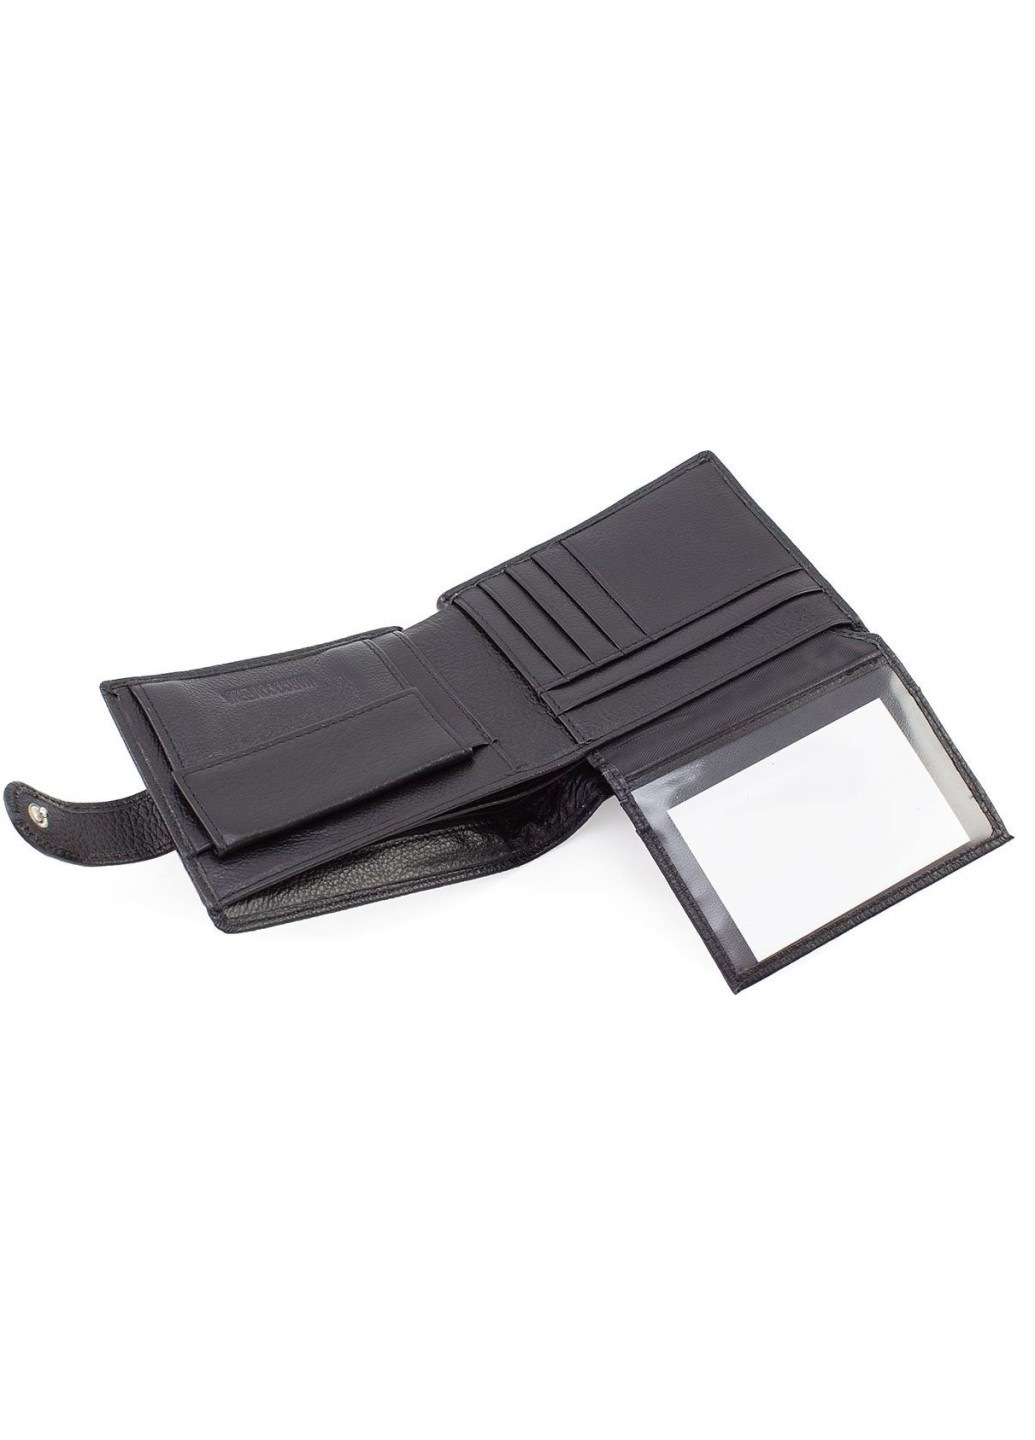 Місткий гаманець зі шкіри із секцією для документів 12х10 M103 (21597) чорний Marco Coverna (259737040)